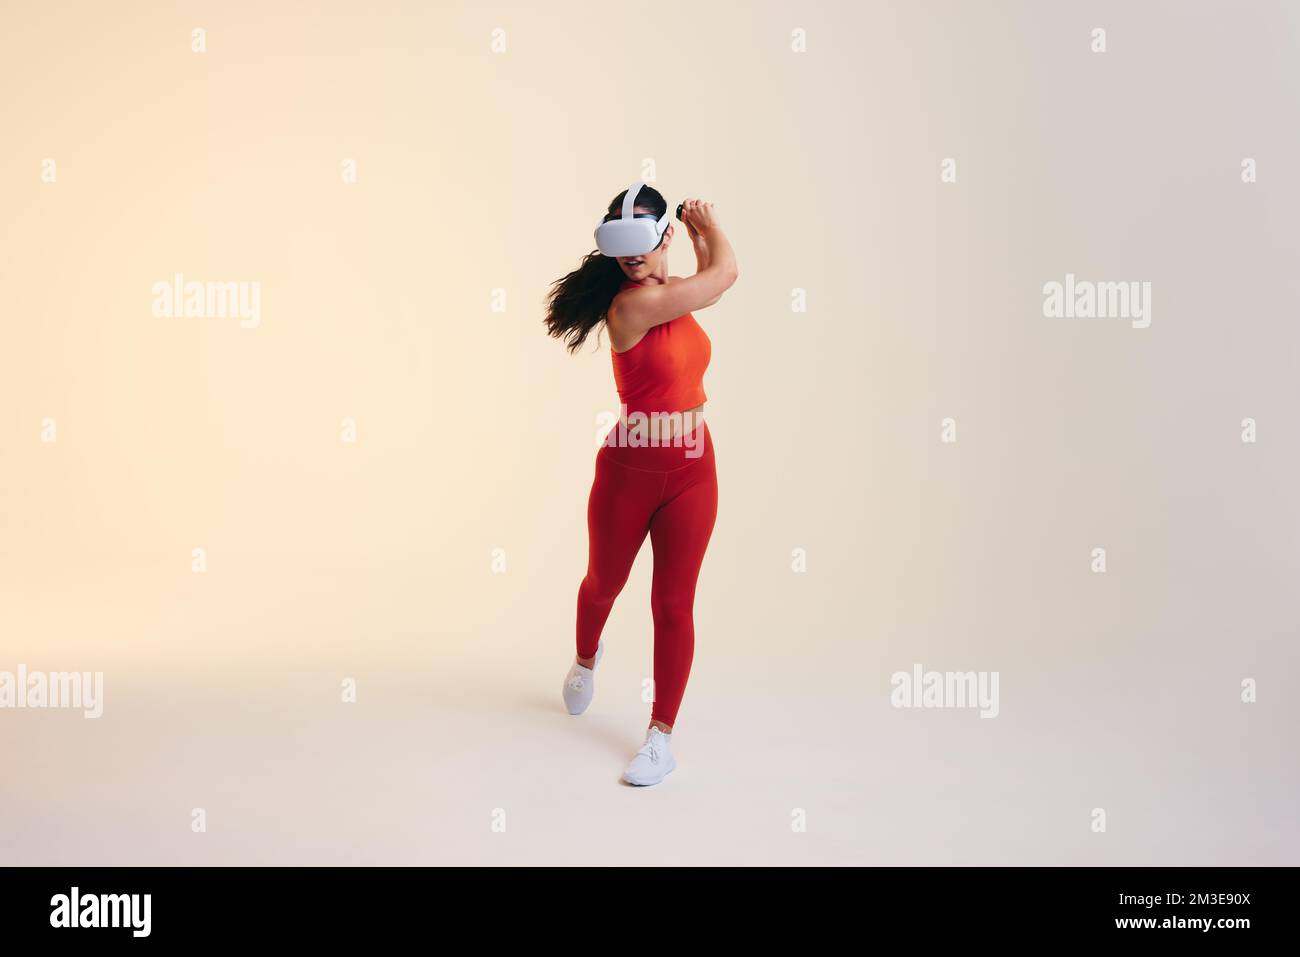 Jeune femme sportive jouant au tennis en réalité virtuelle. Jeune femme sportive balançant une batte de tennis virtuelle à l'aide de contrôleurs de jeu. Port de Sportswoman Banque D'Images